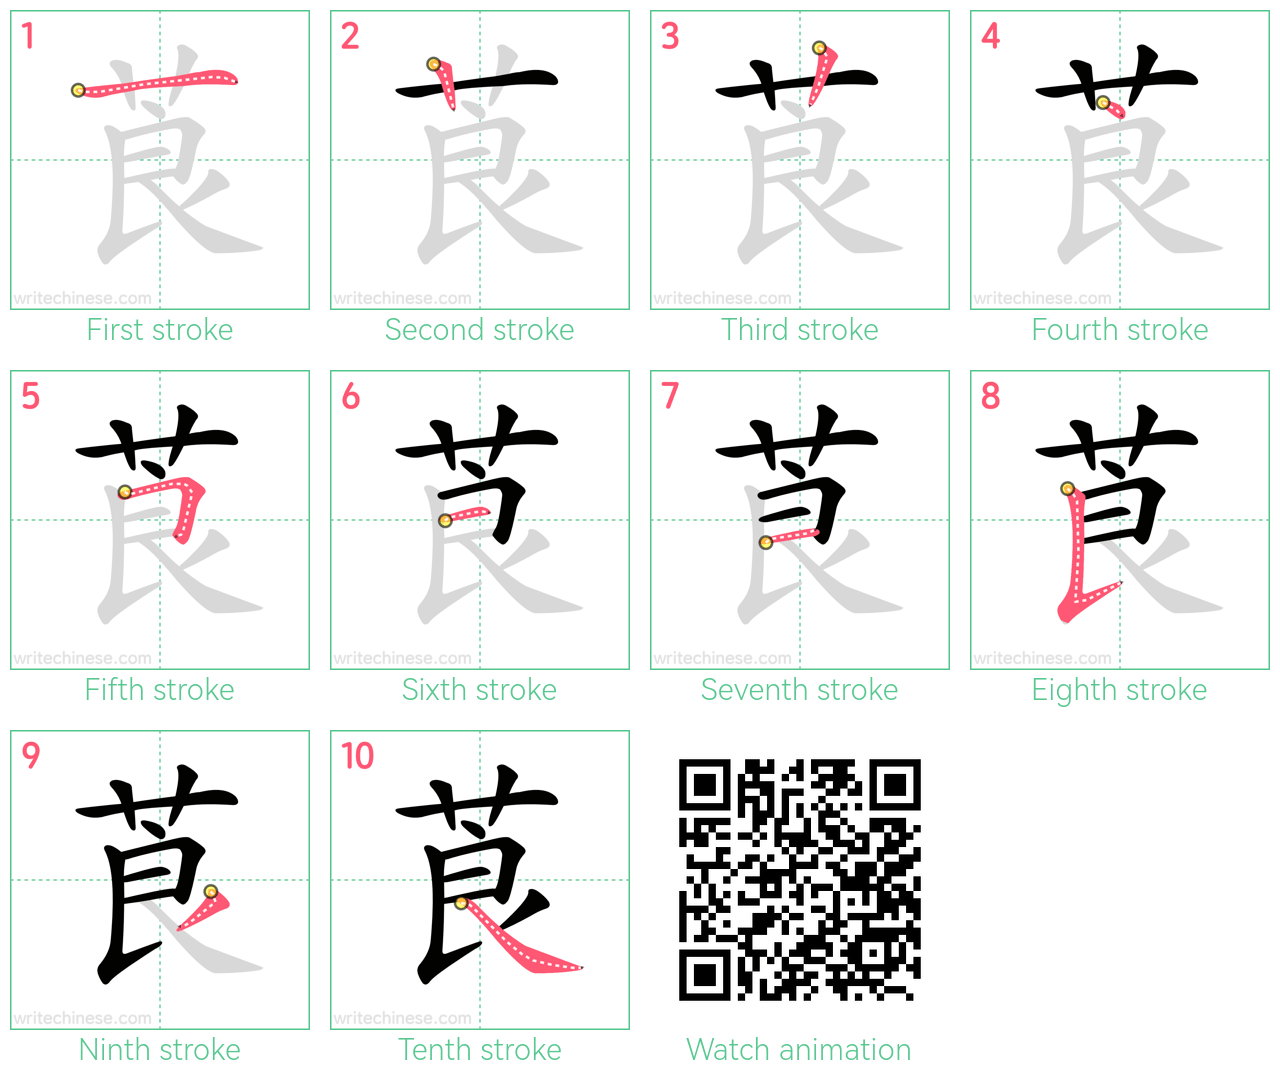 莨 step-by-step stroke order diagrams